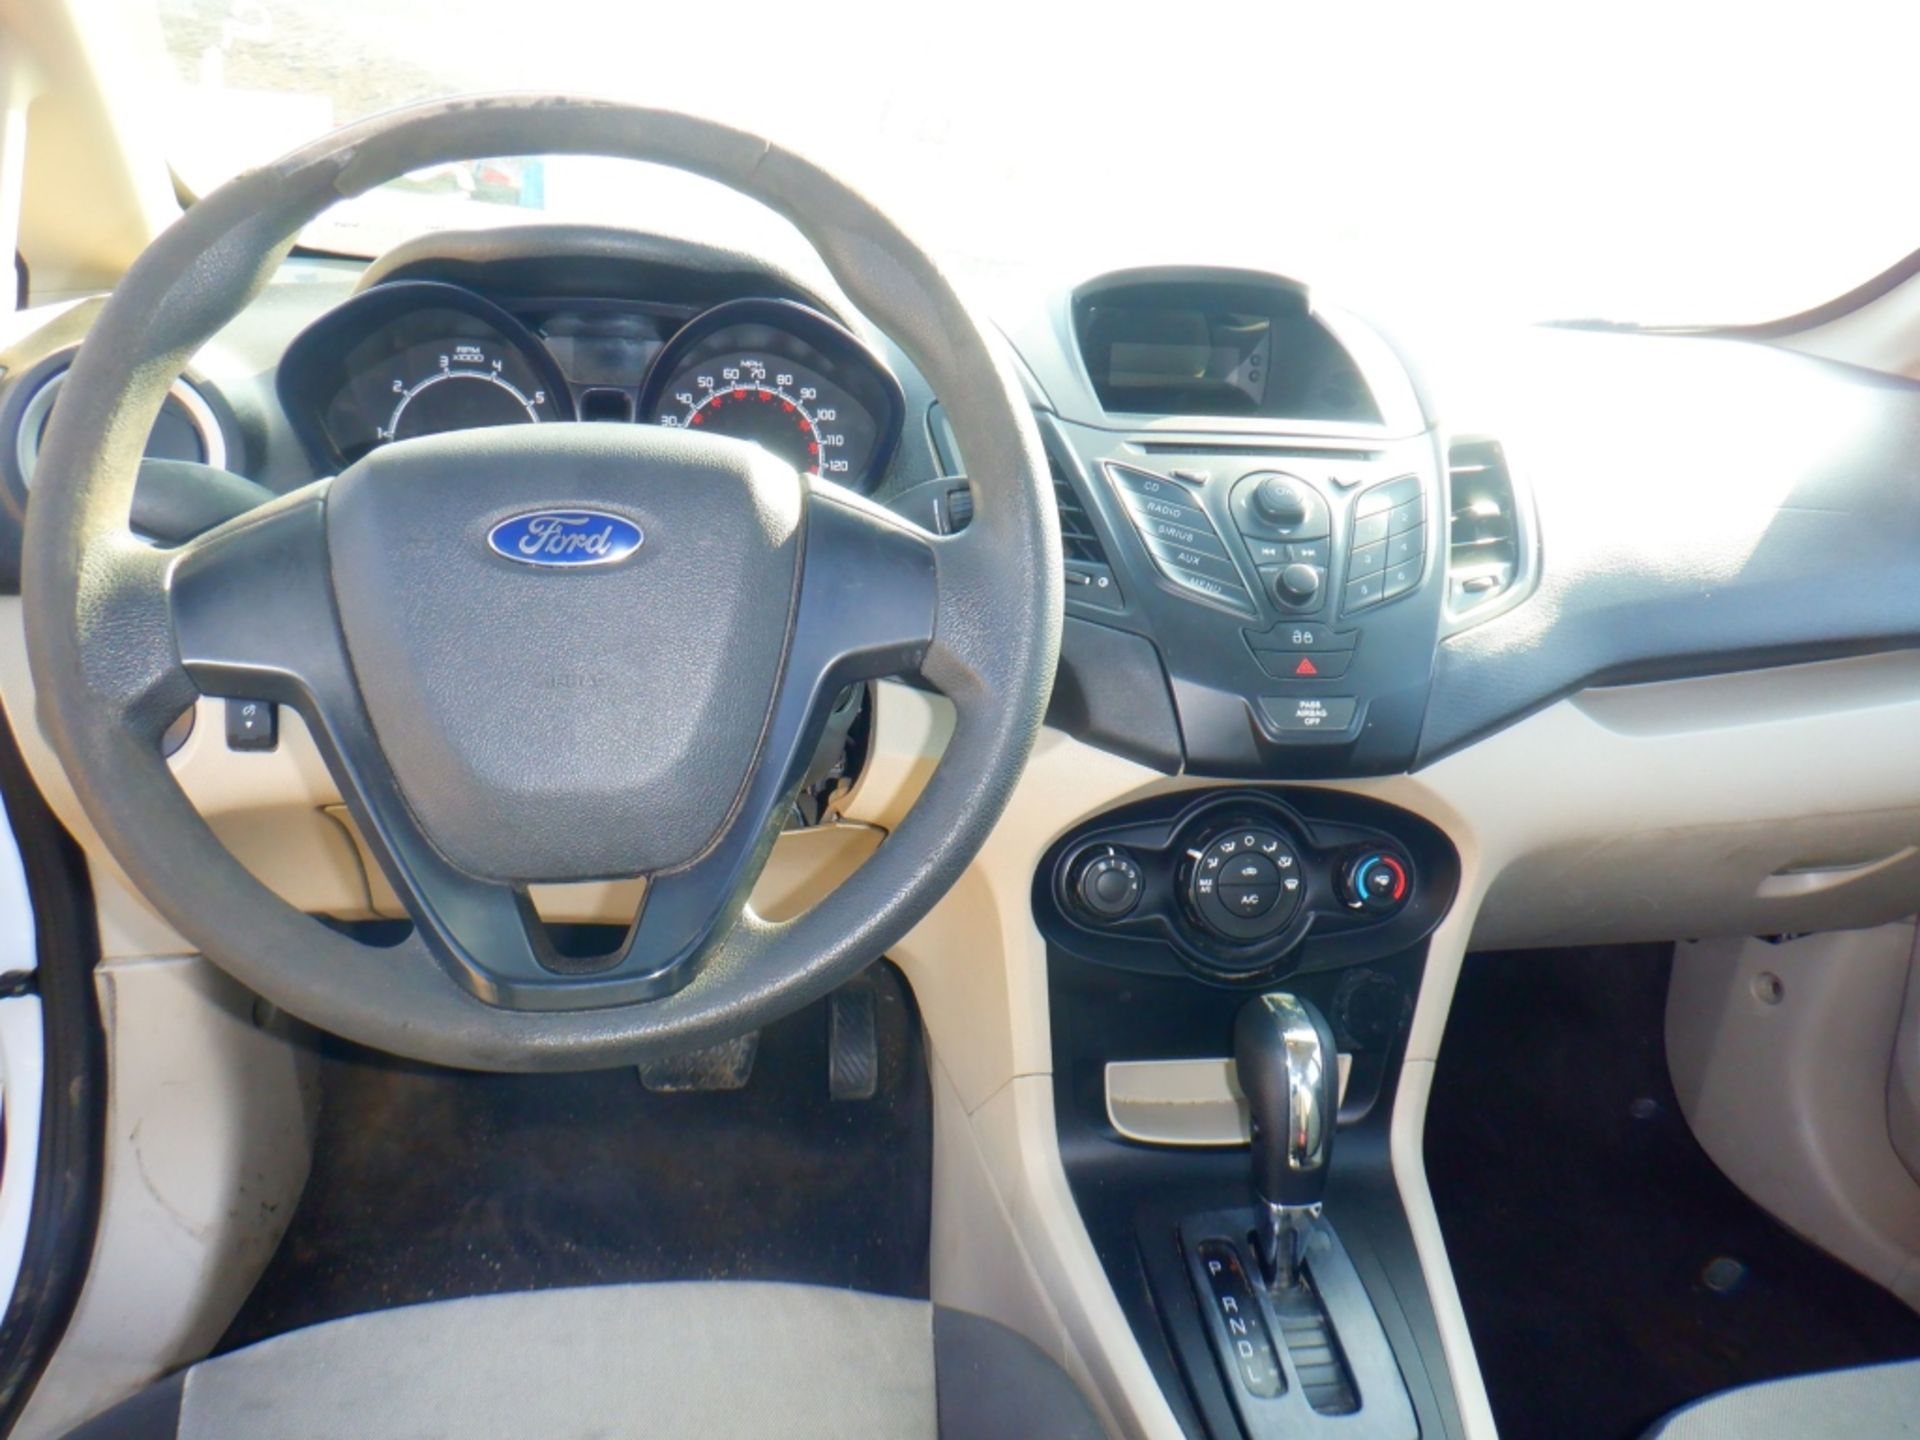 2013 Ford Fiesta Sedan, - Image 25 of 34